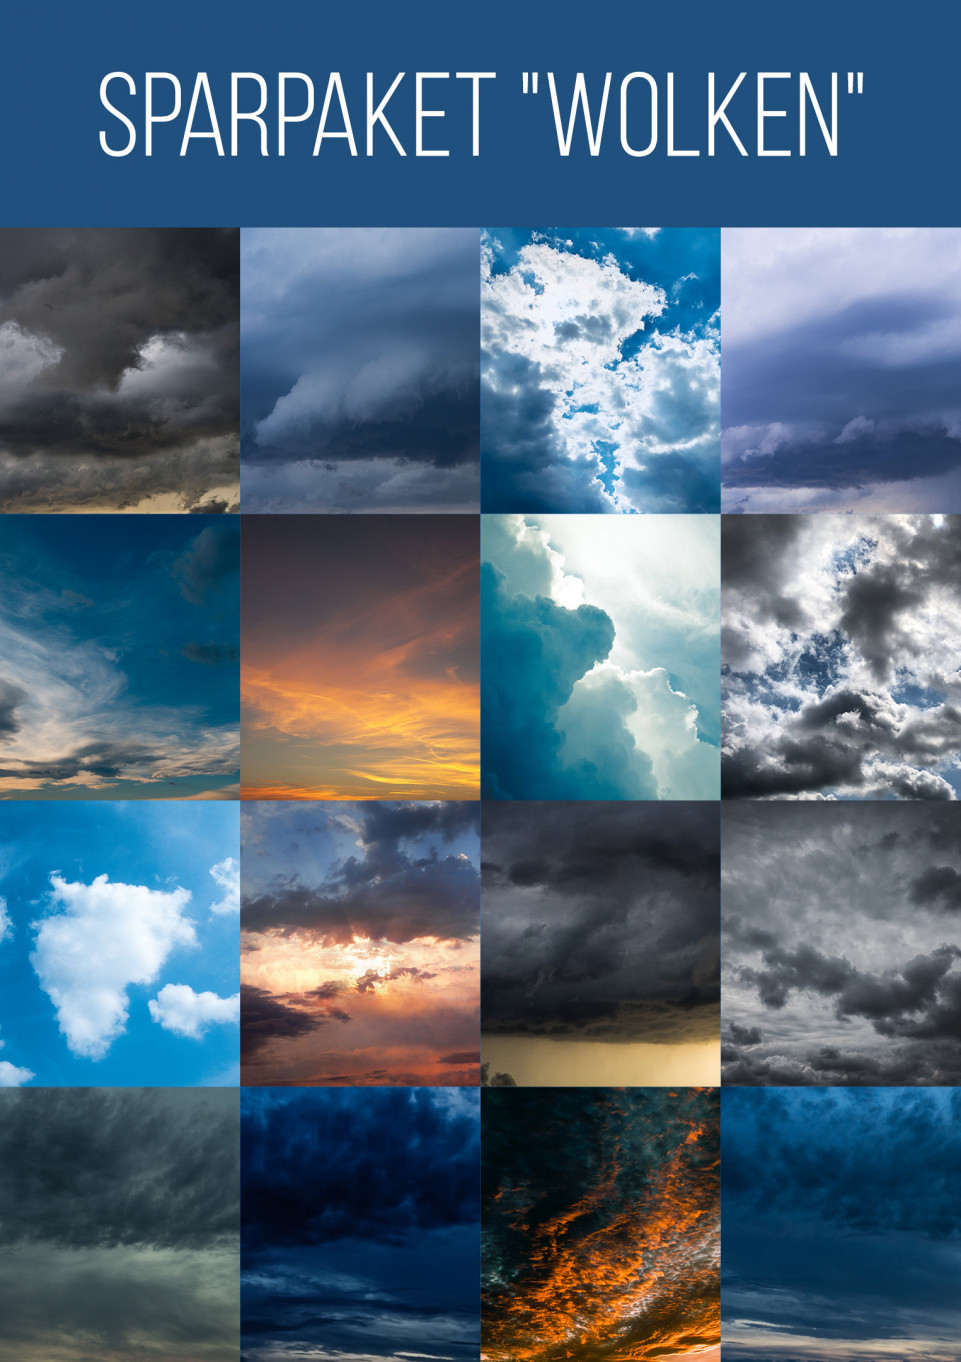 Über 200 Wolken-Assets im Sparpaket: Bilder, Pinsel und Vektorgrafiken